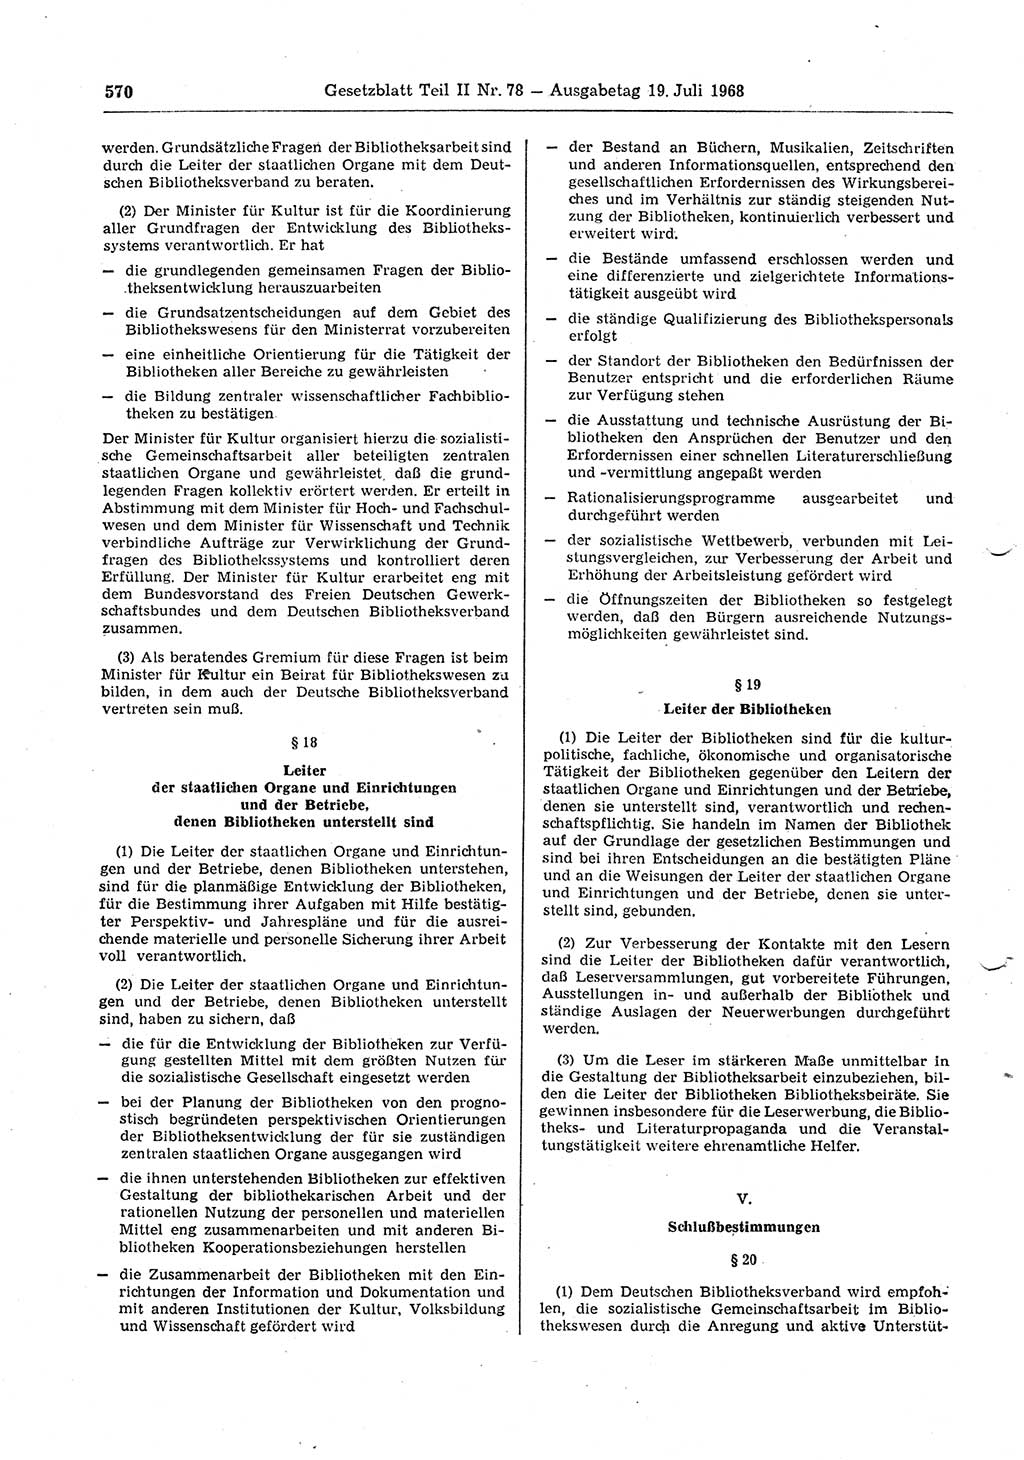 Gesetzblatt (GBl.) der Deutschen Demokratischen Republik (DDR) Teil ⅠⅠ 1968, Seite 570 (GBl. DDR ⅠⅠ 1968, S. 570)